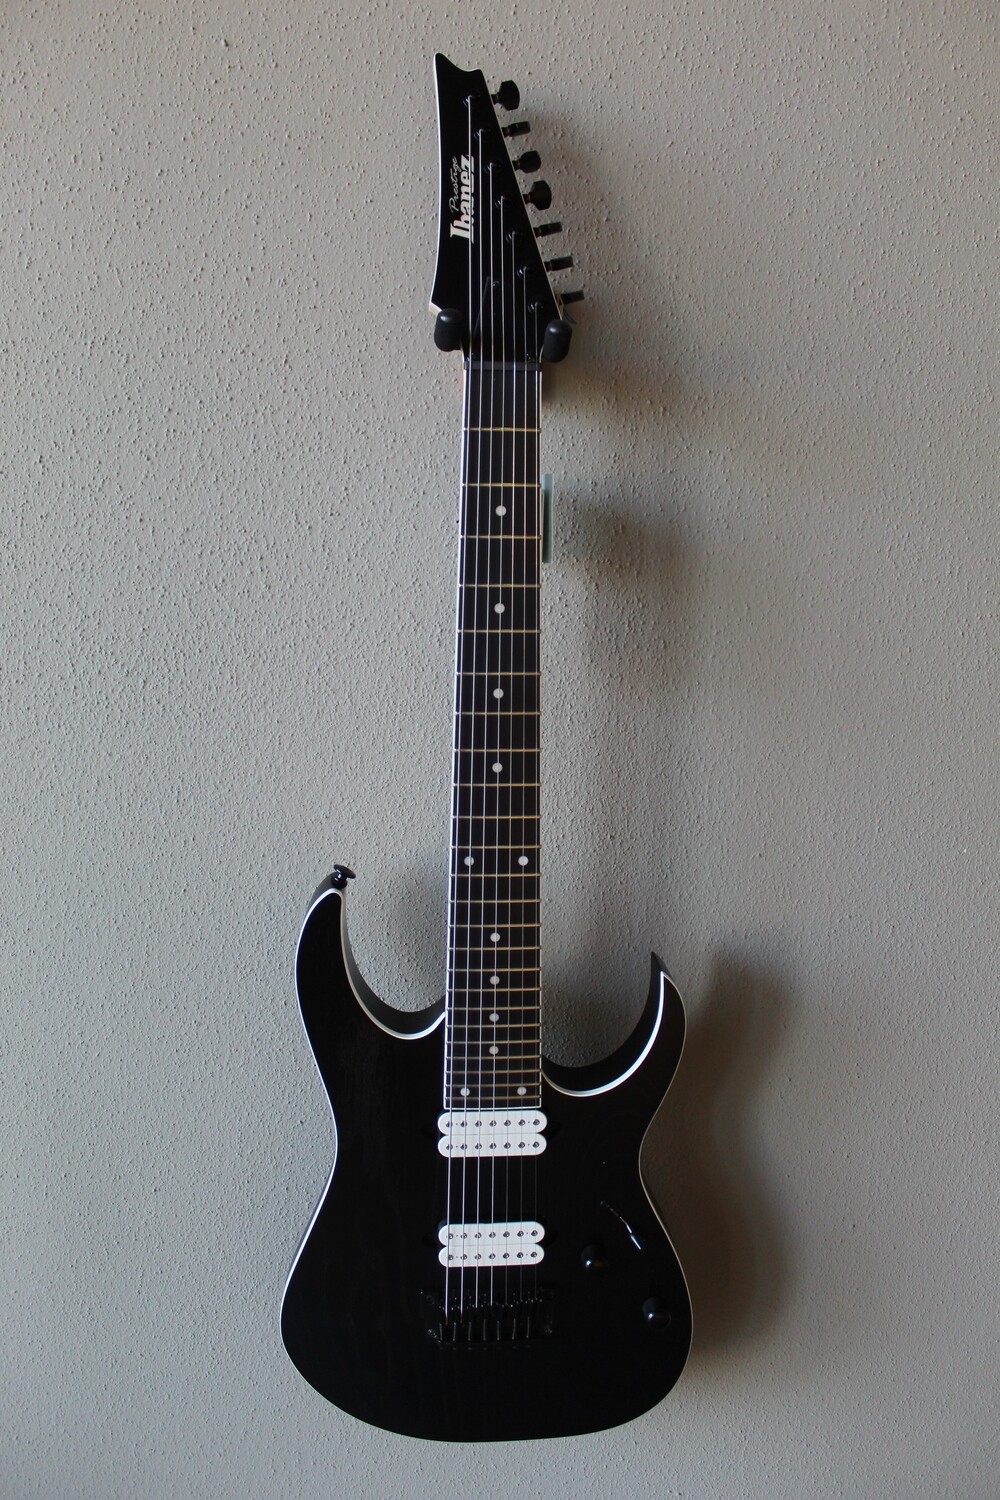 Ibanez Prestige RGR752AHBF 7 String Electric Guitar - Weathered Black - Japan